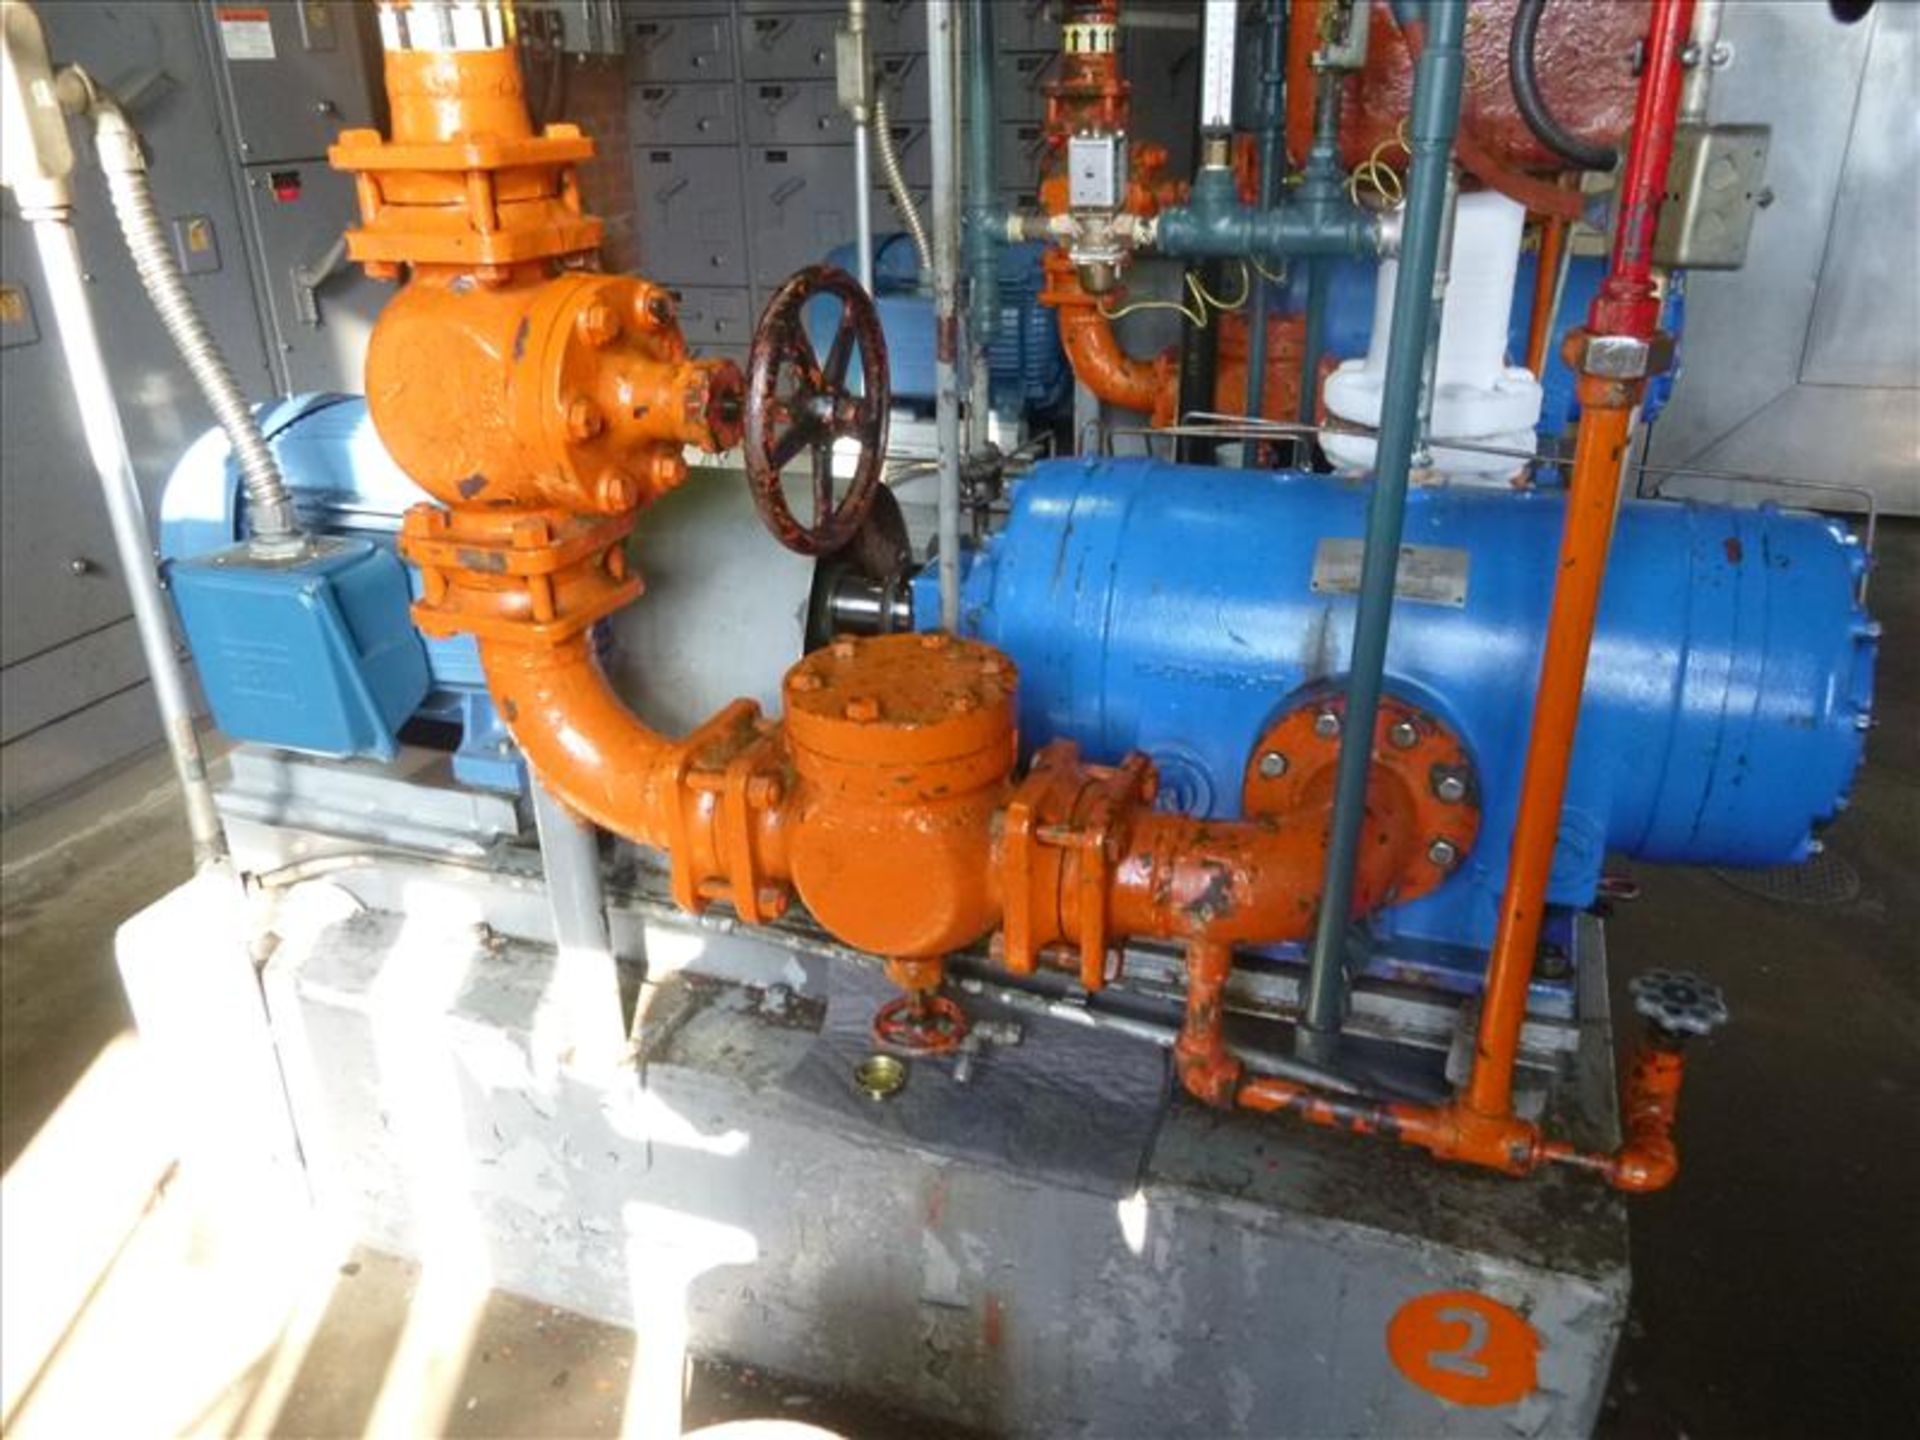 Ro-Flo mod. 106 ser. no. 5016-1 40 h.p. ammonia compressor (located at 321 Courtland Ave E Kitchener